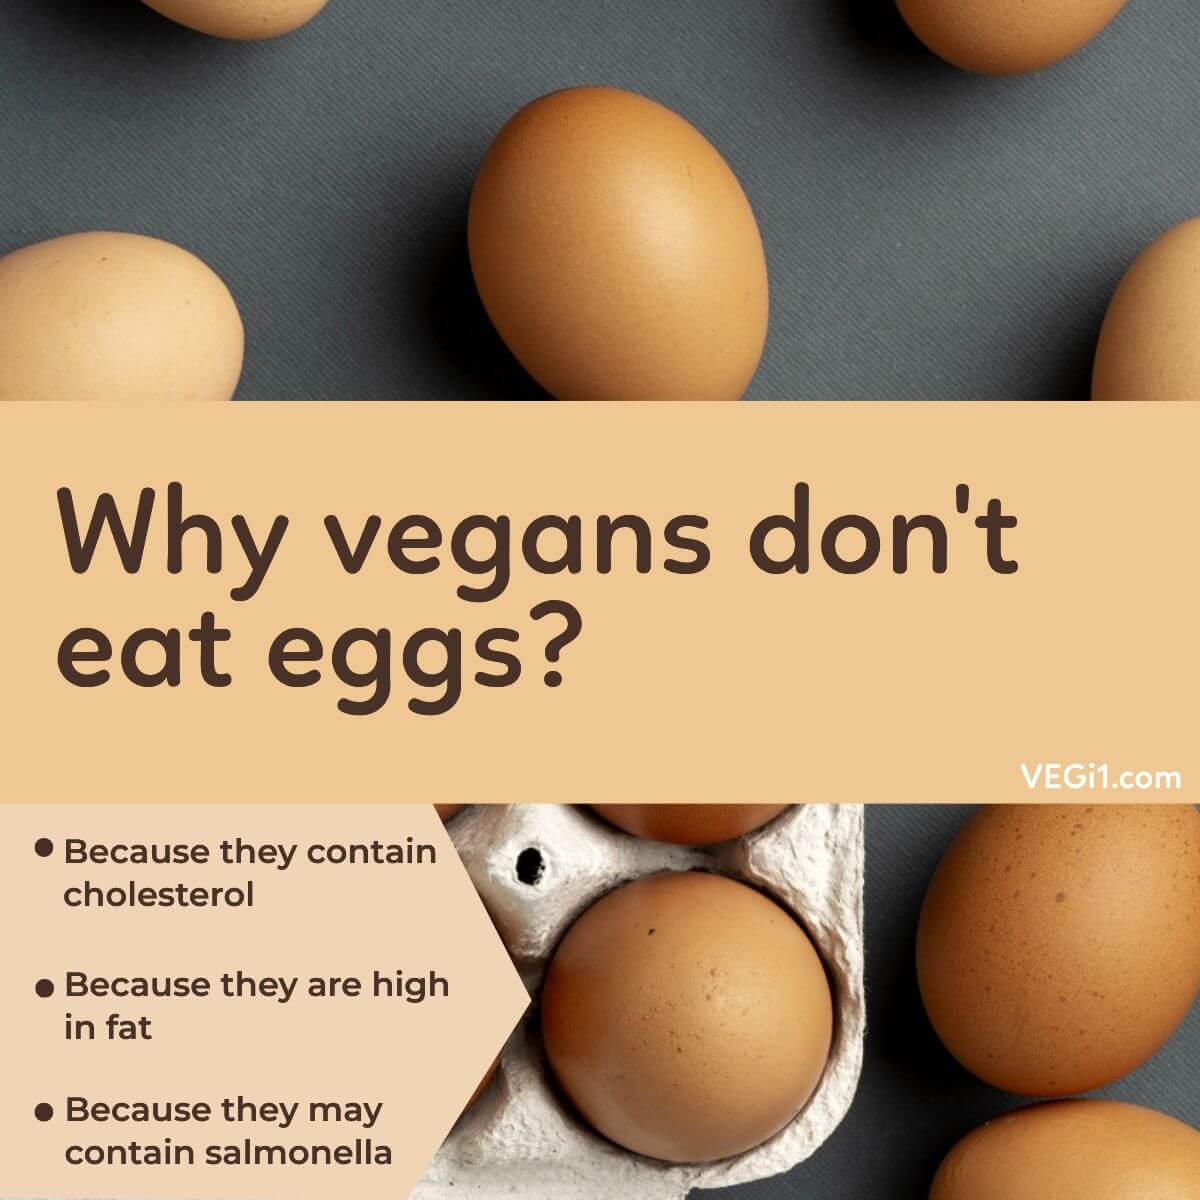 Why vegans don't eat eggs?